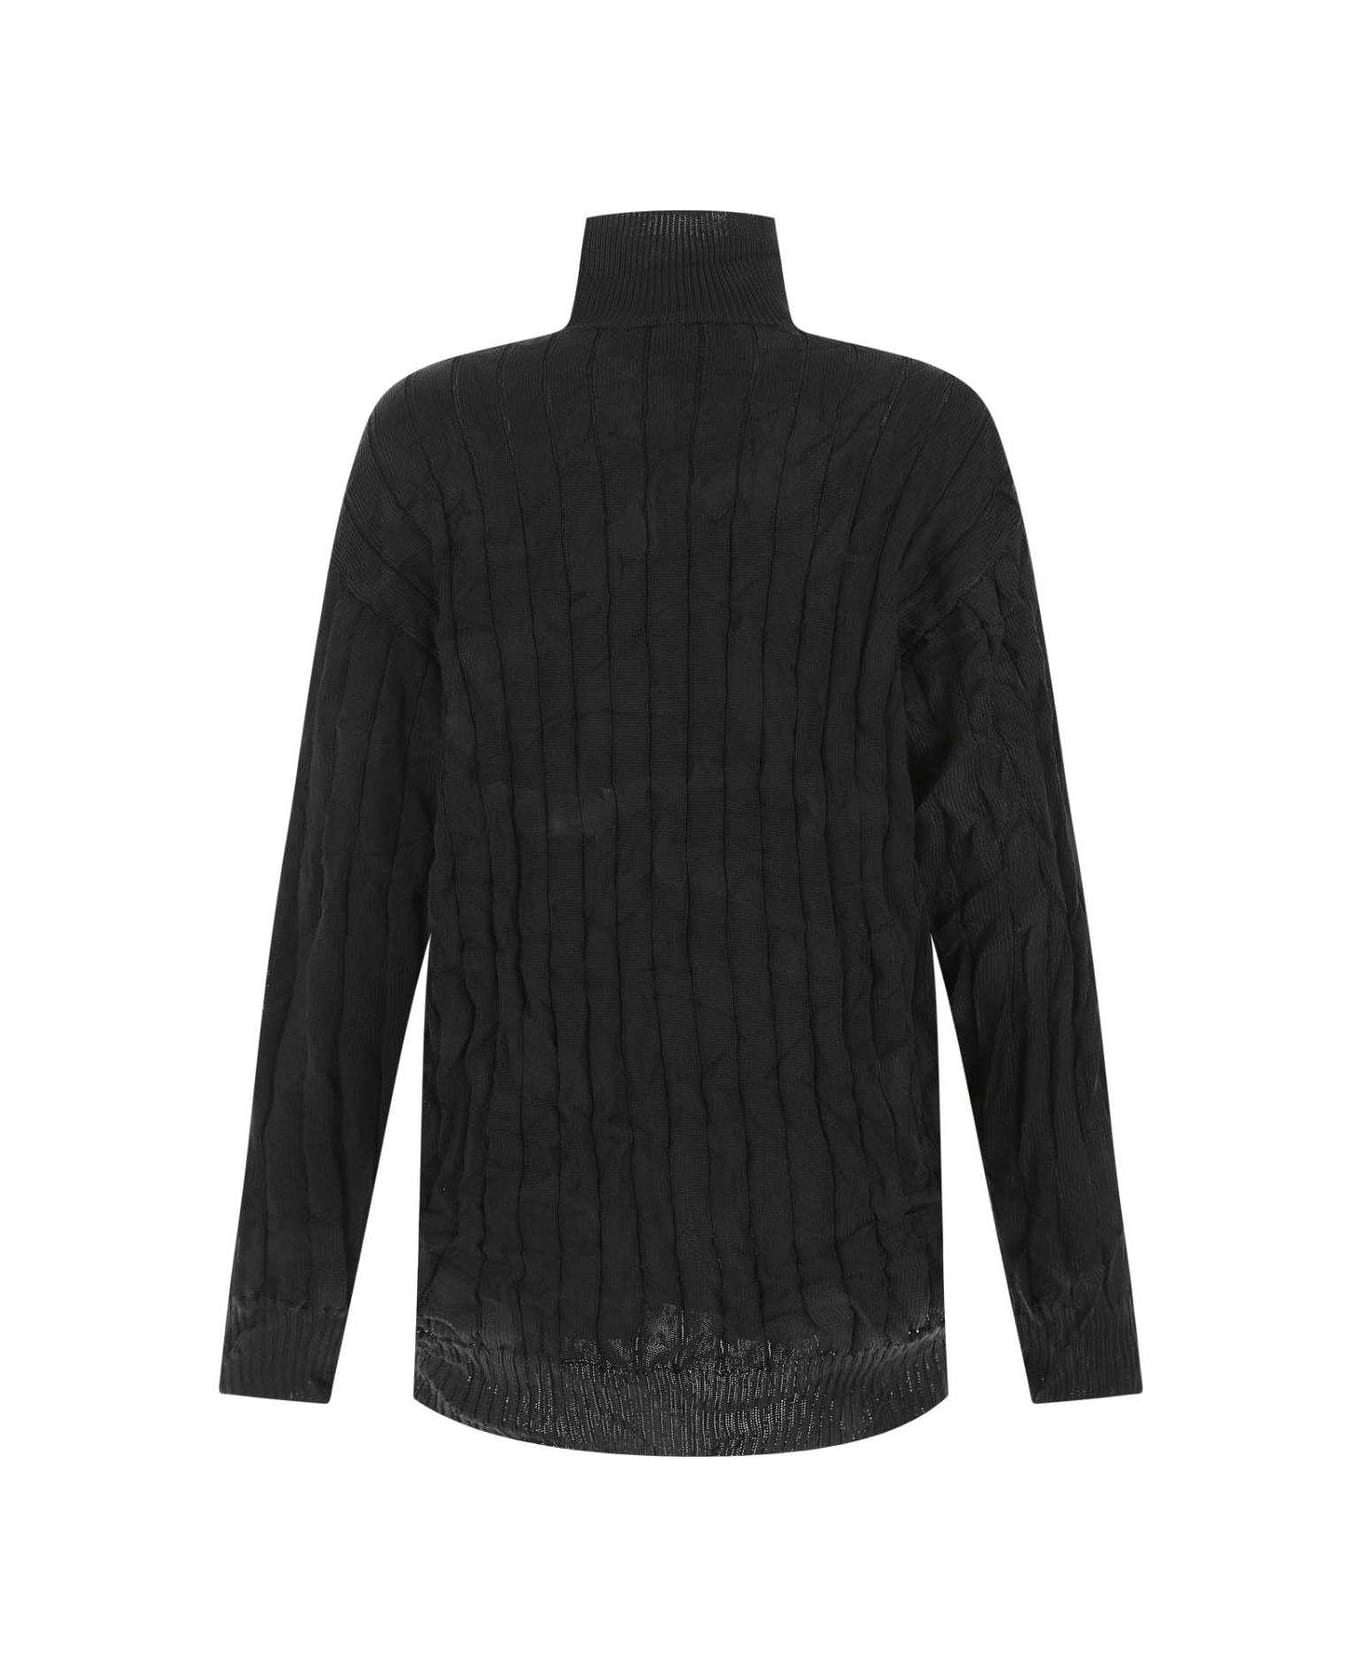 Balenciaga Creased Turtleneck Knit Jumper - BLACK ニットウェア